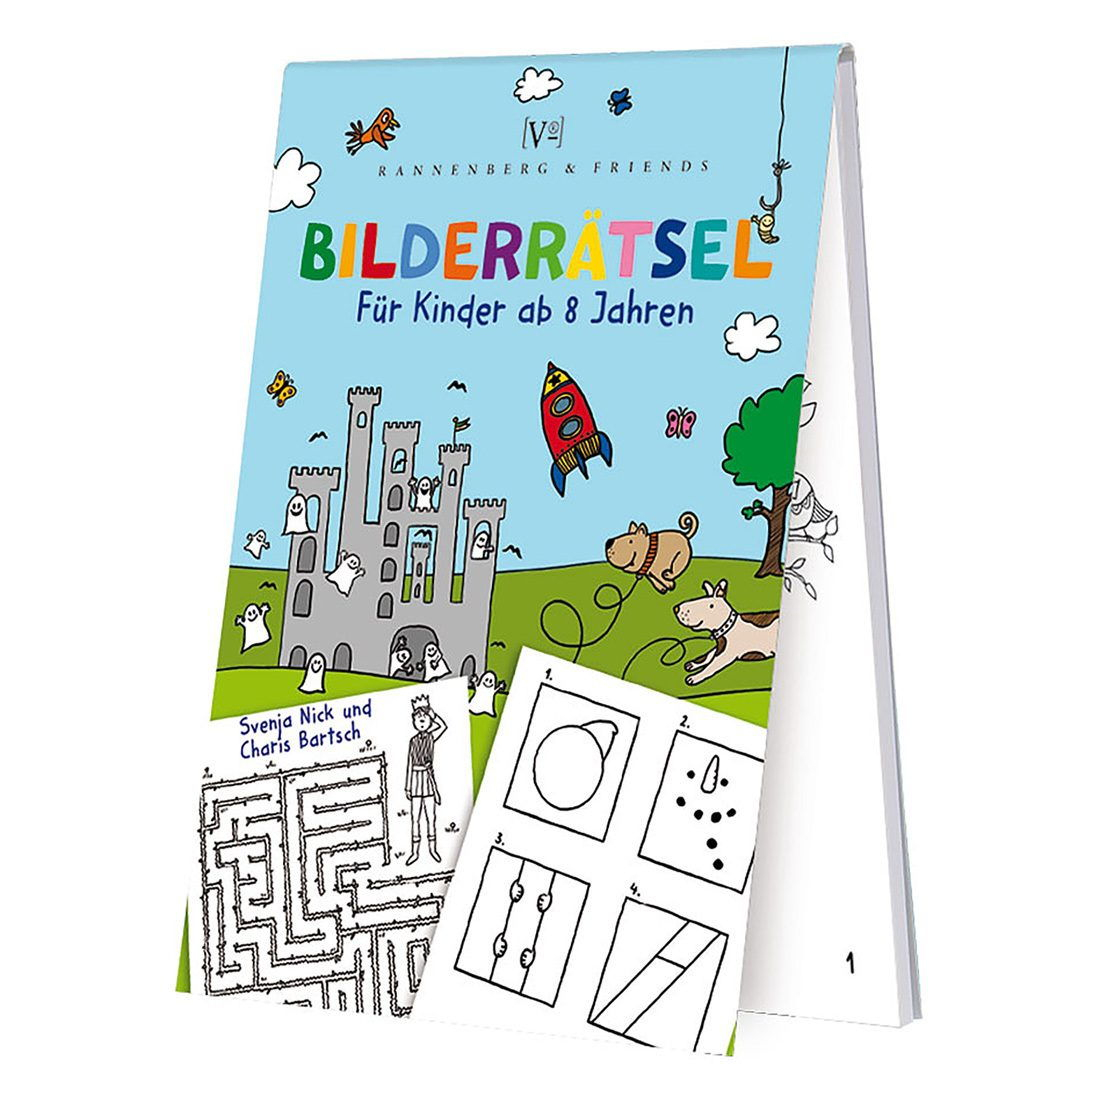 Spieleblöckchen - Bilderrätsel Für Kinder ganzes Bilderrätsel Für Kinder